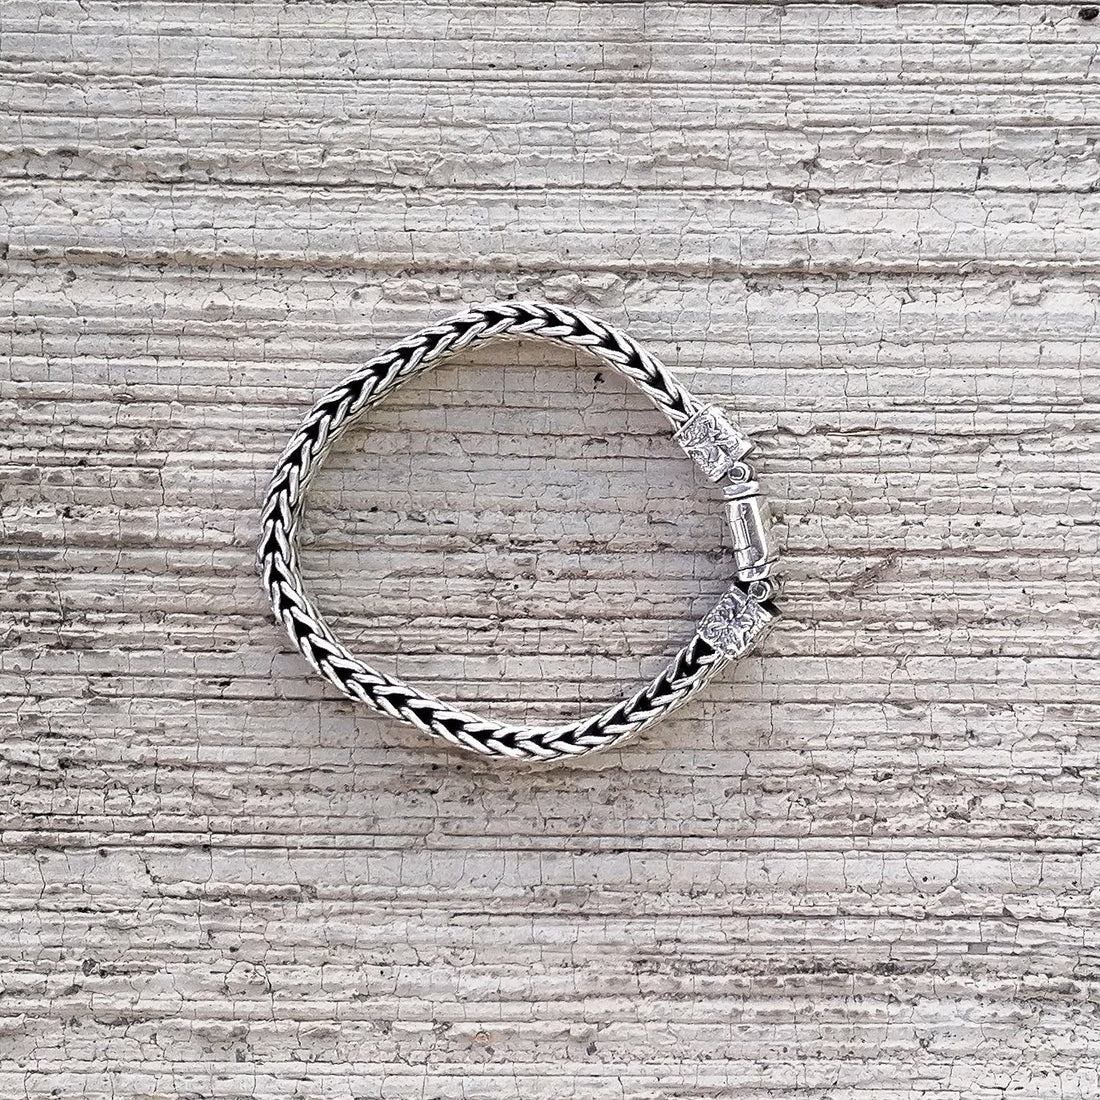 Buy Sterling Silver Bracelet For Men Online at